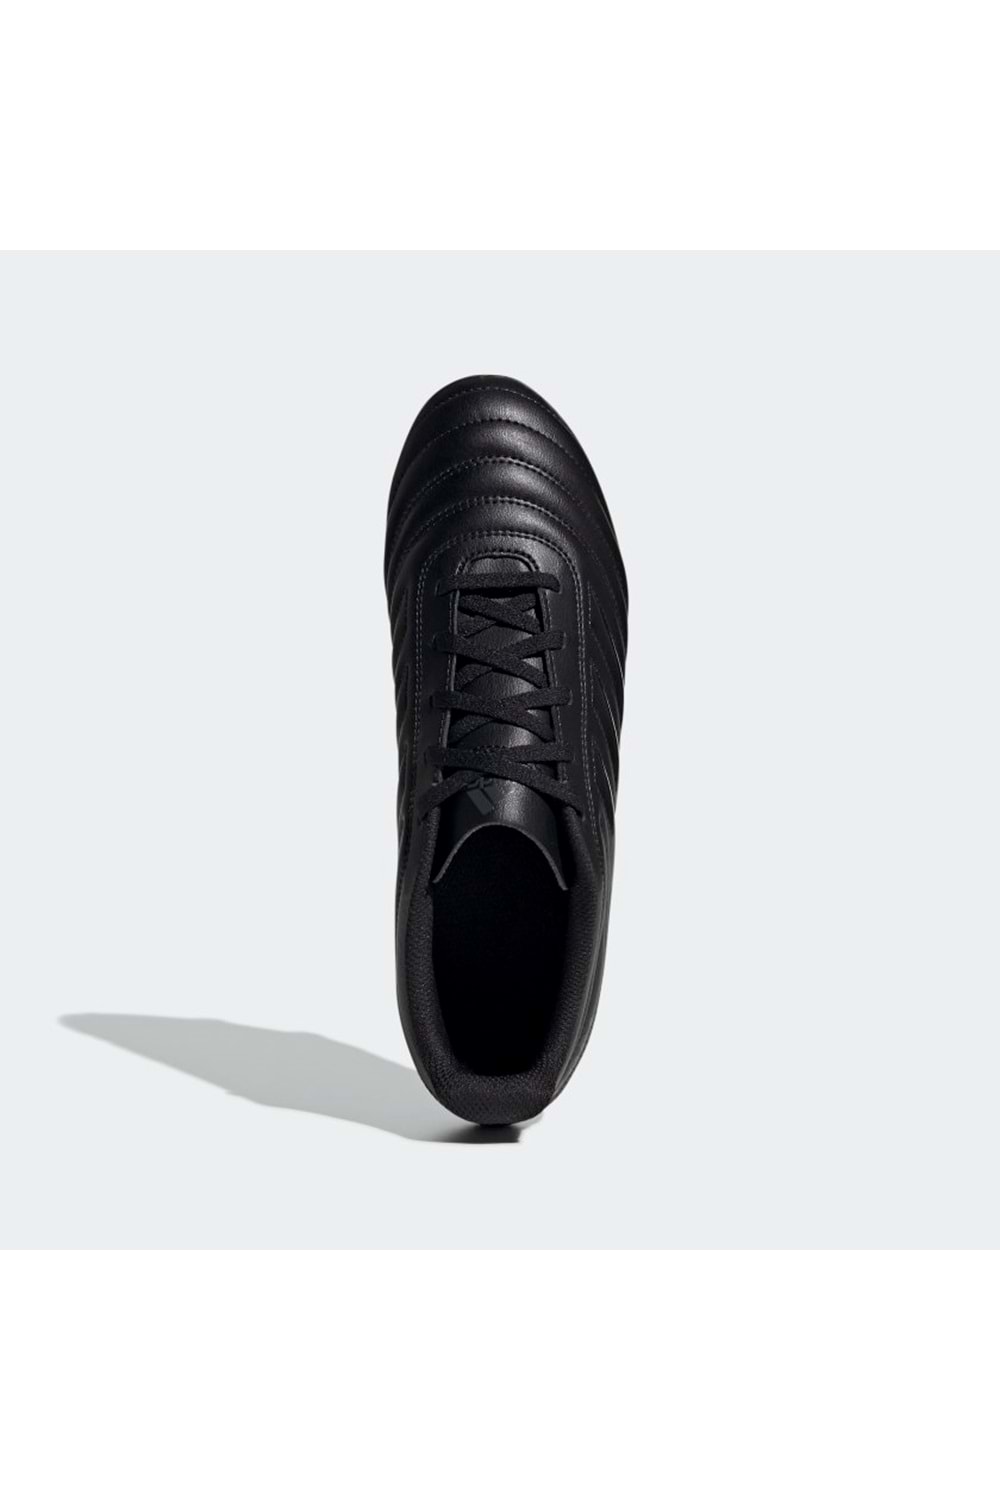 Adidas Copa 20.4 Erkek Futbol Ayakkabısı G28527